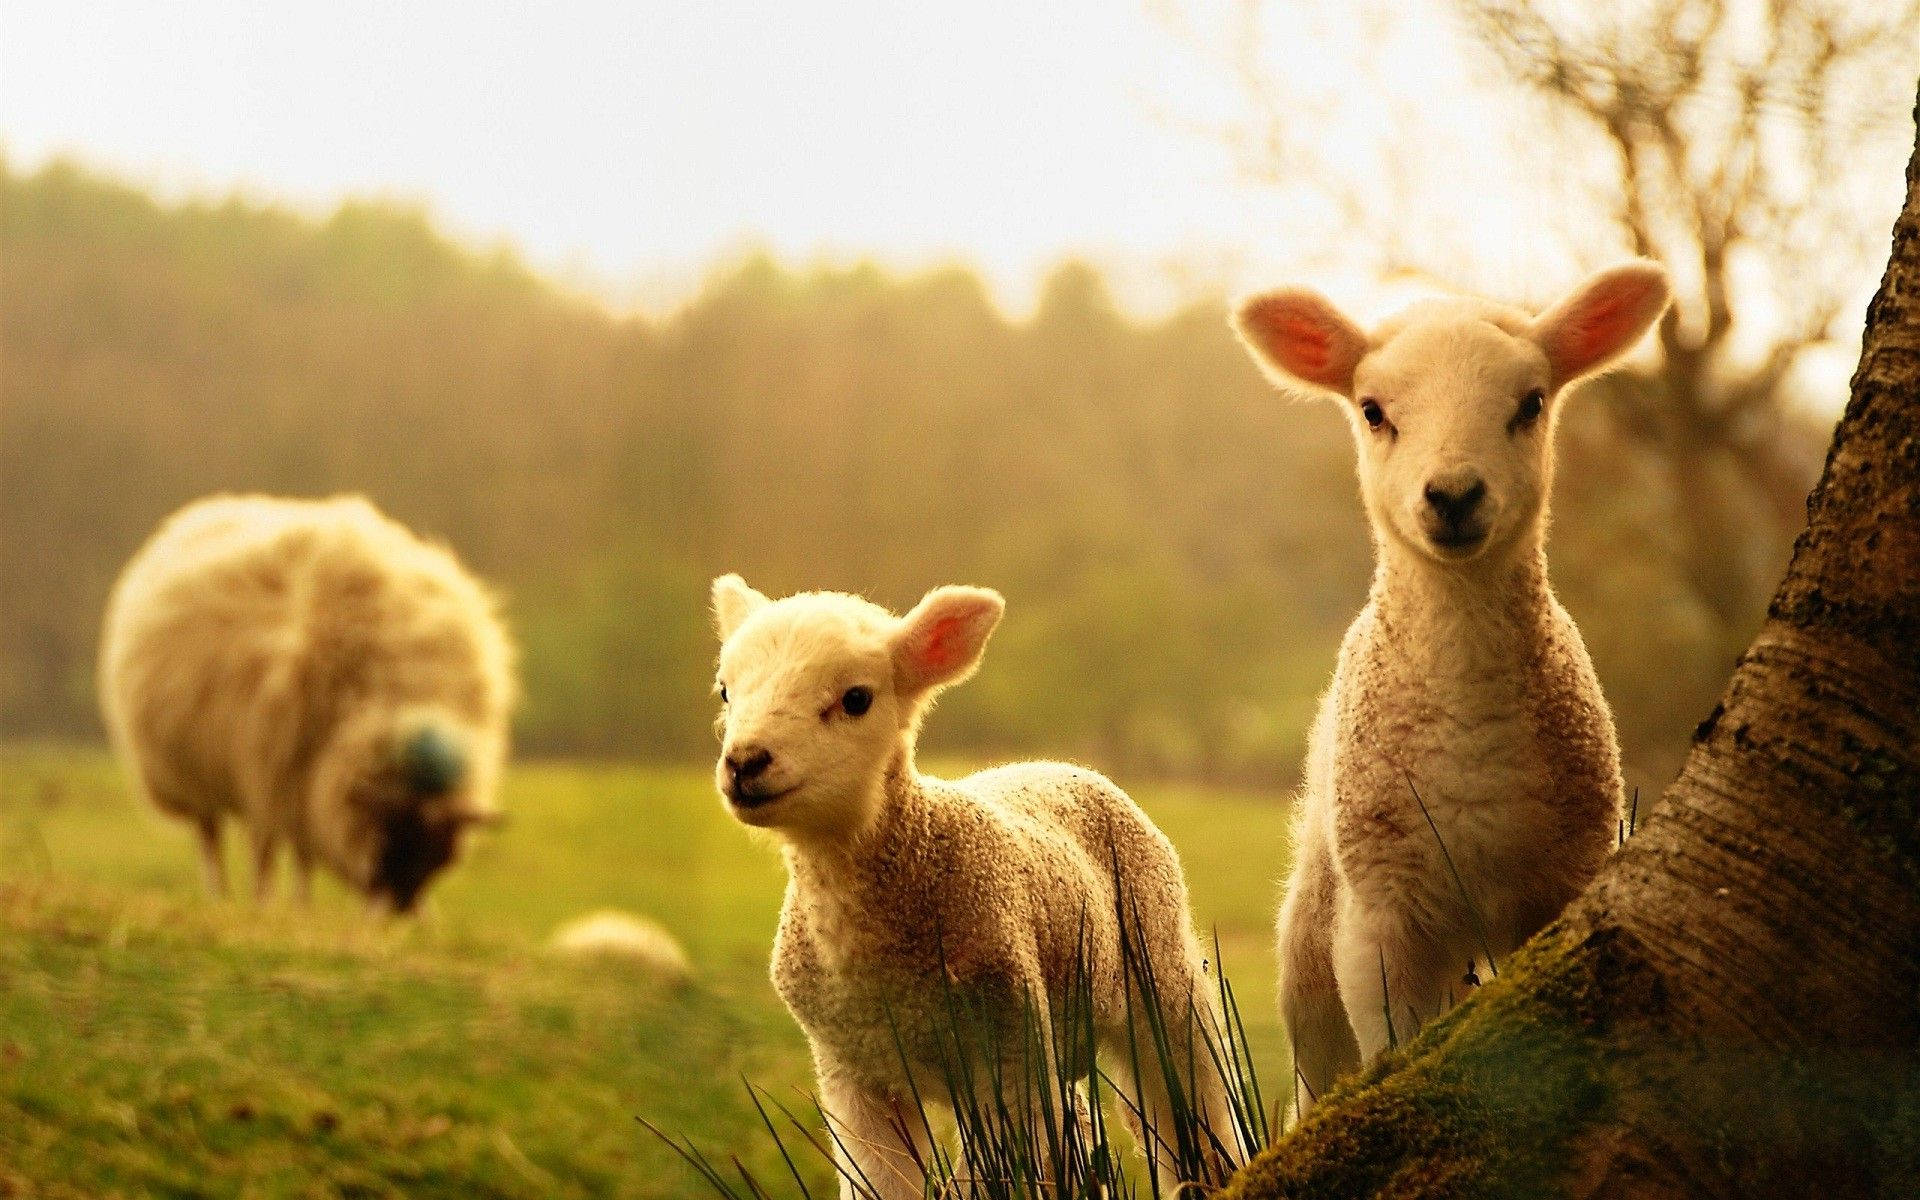 Cute Spring Lamb